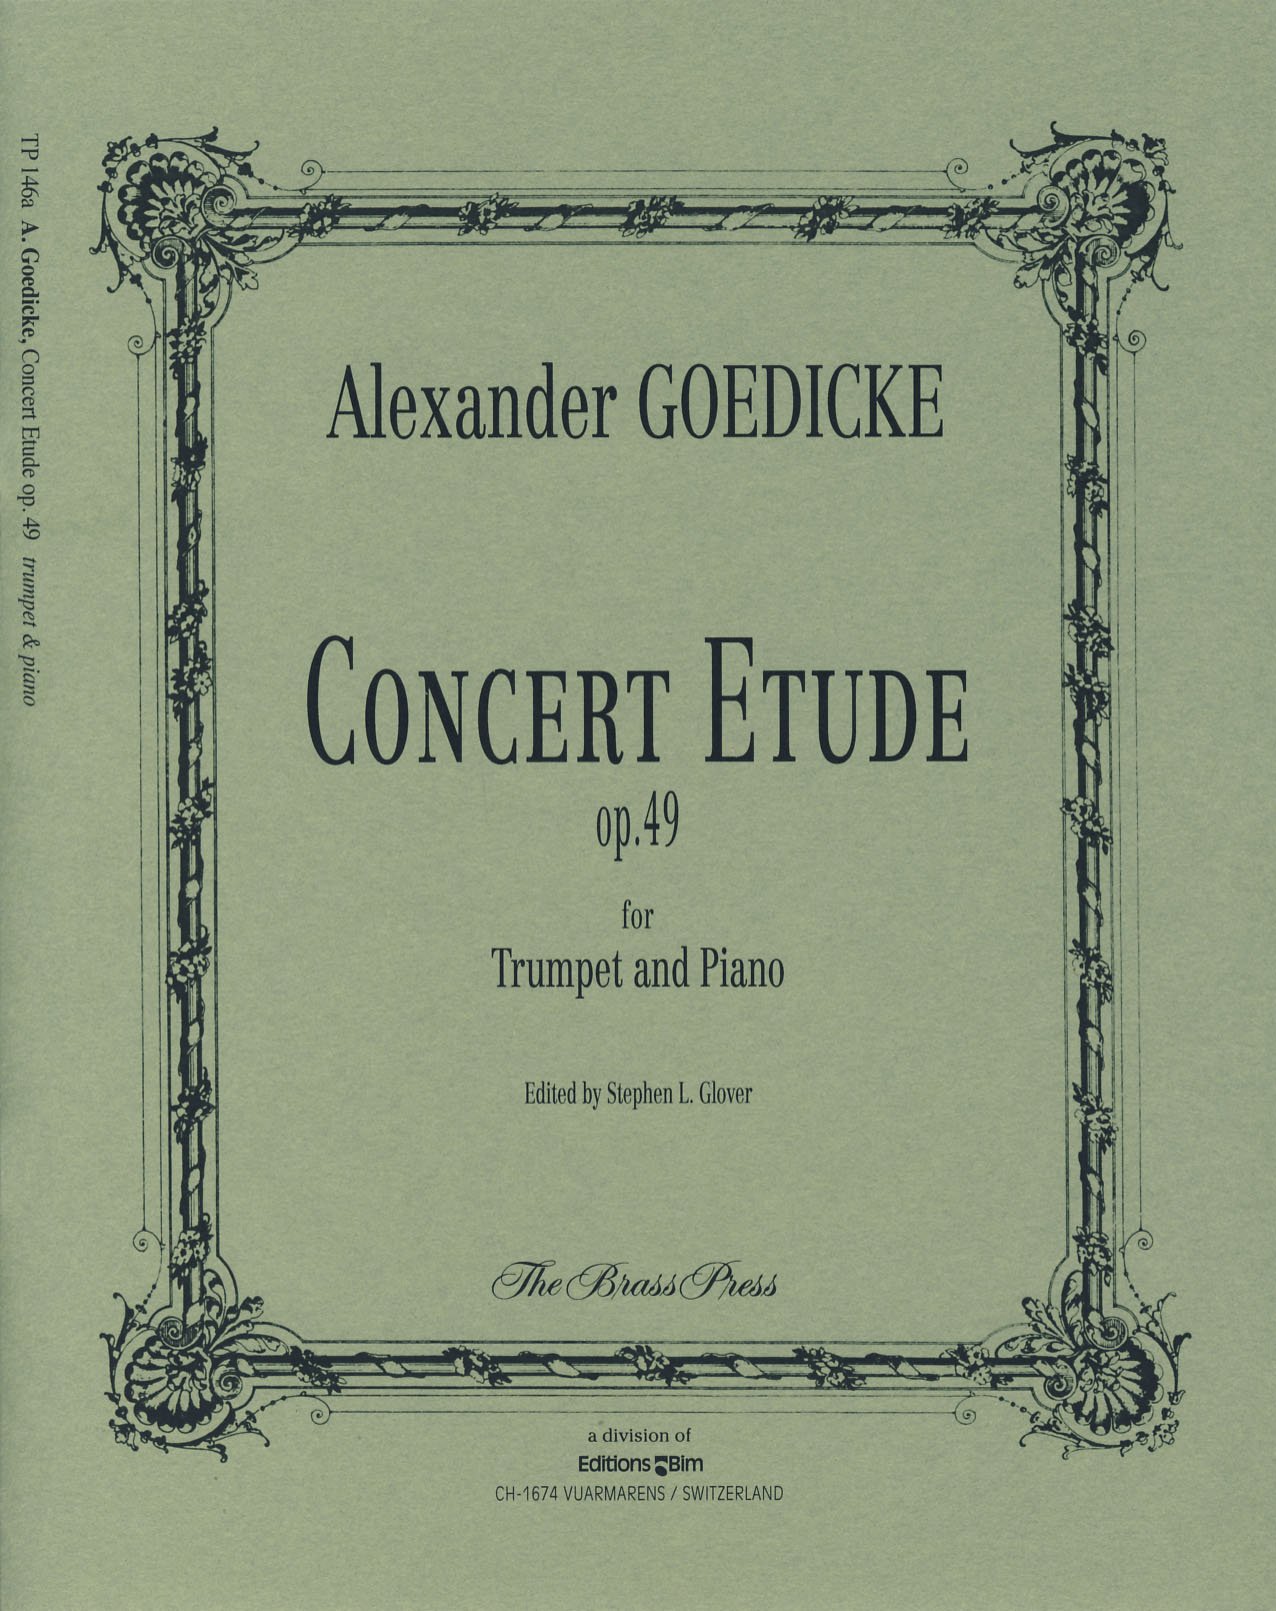 Goedicke Concert Etude Op49 Trumpet & Piano Sheet Music Songbook